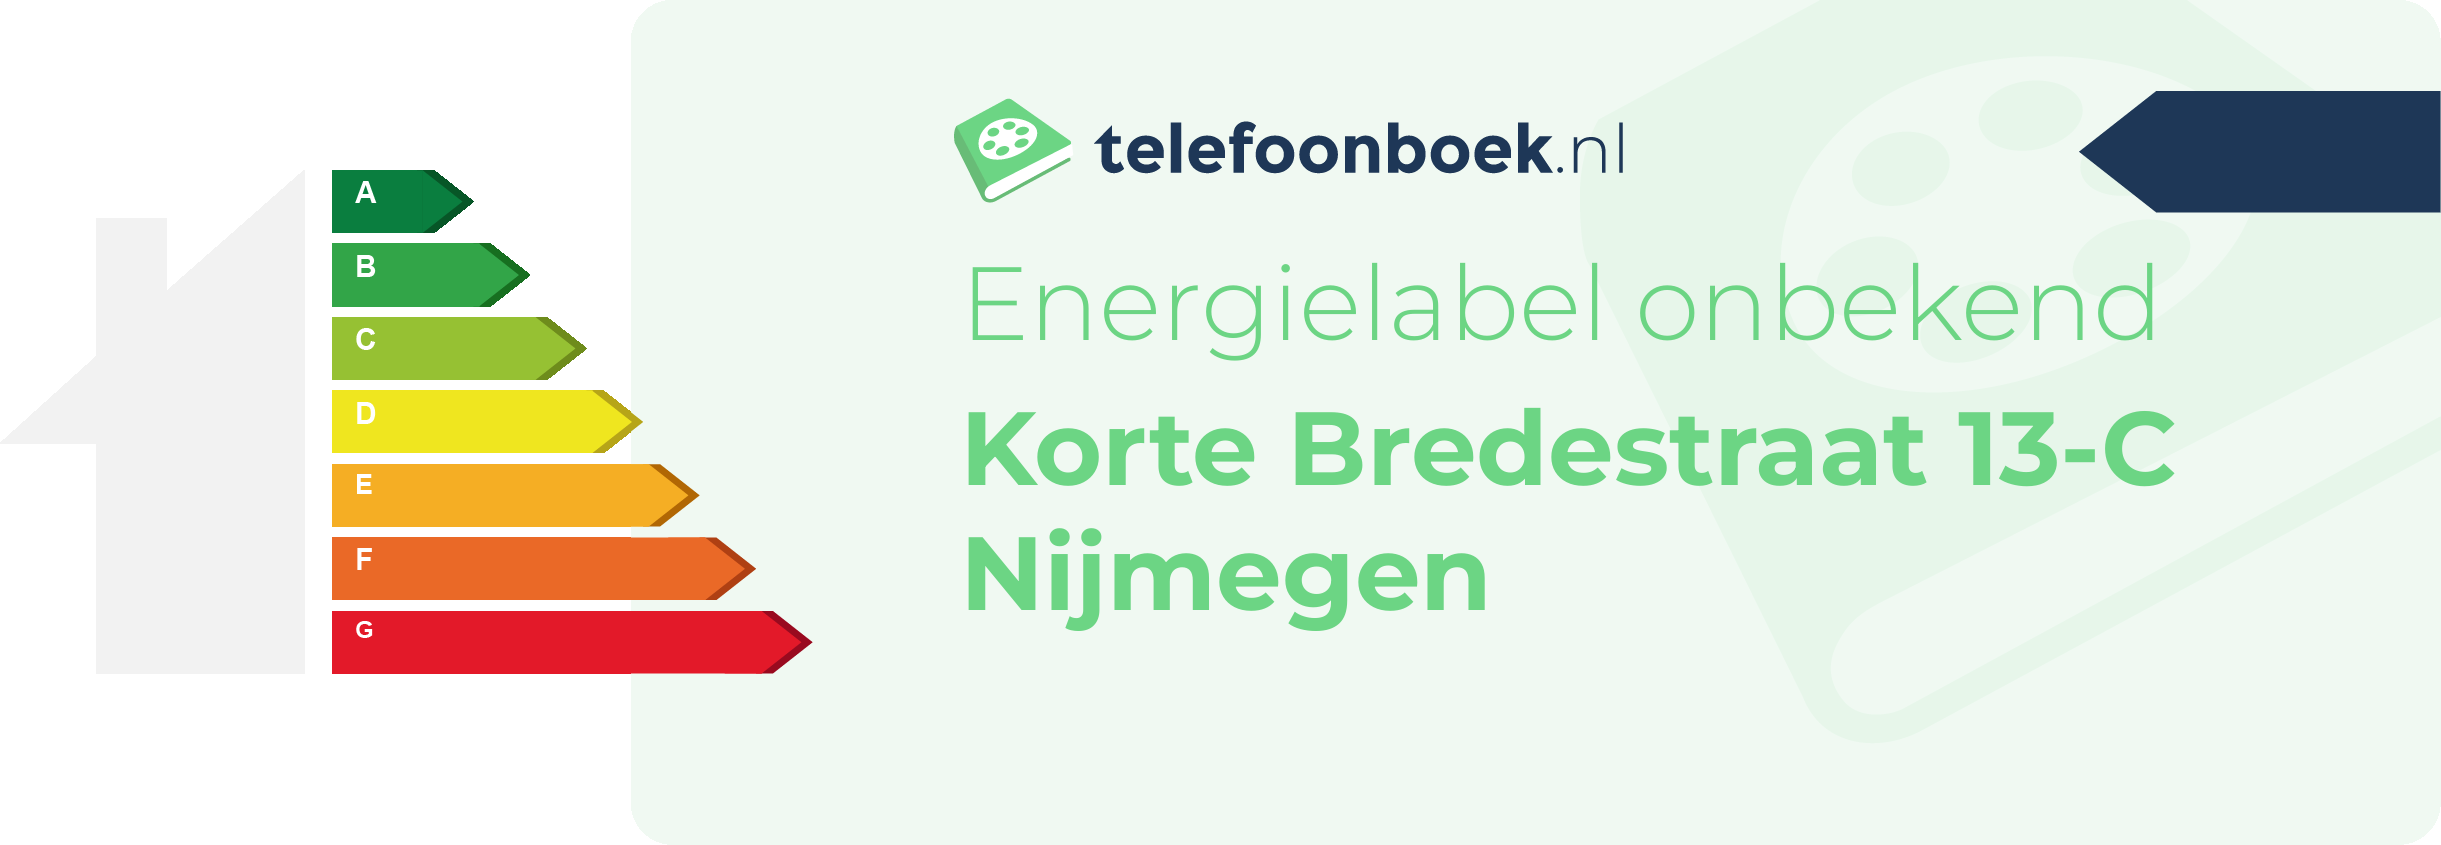 Energielabel Korte Bredestraat 13-C Nijmegen